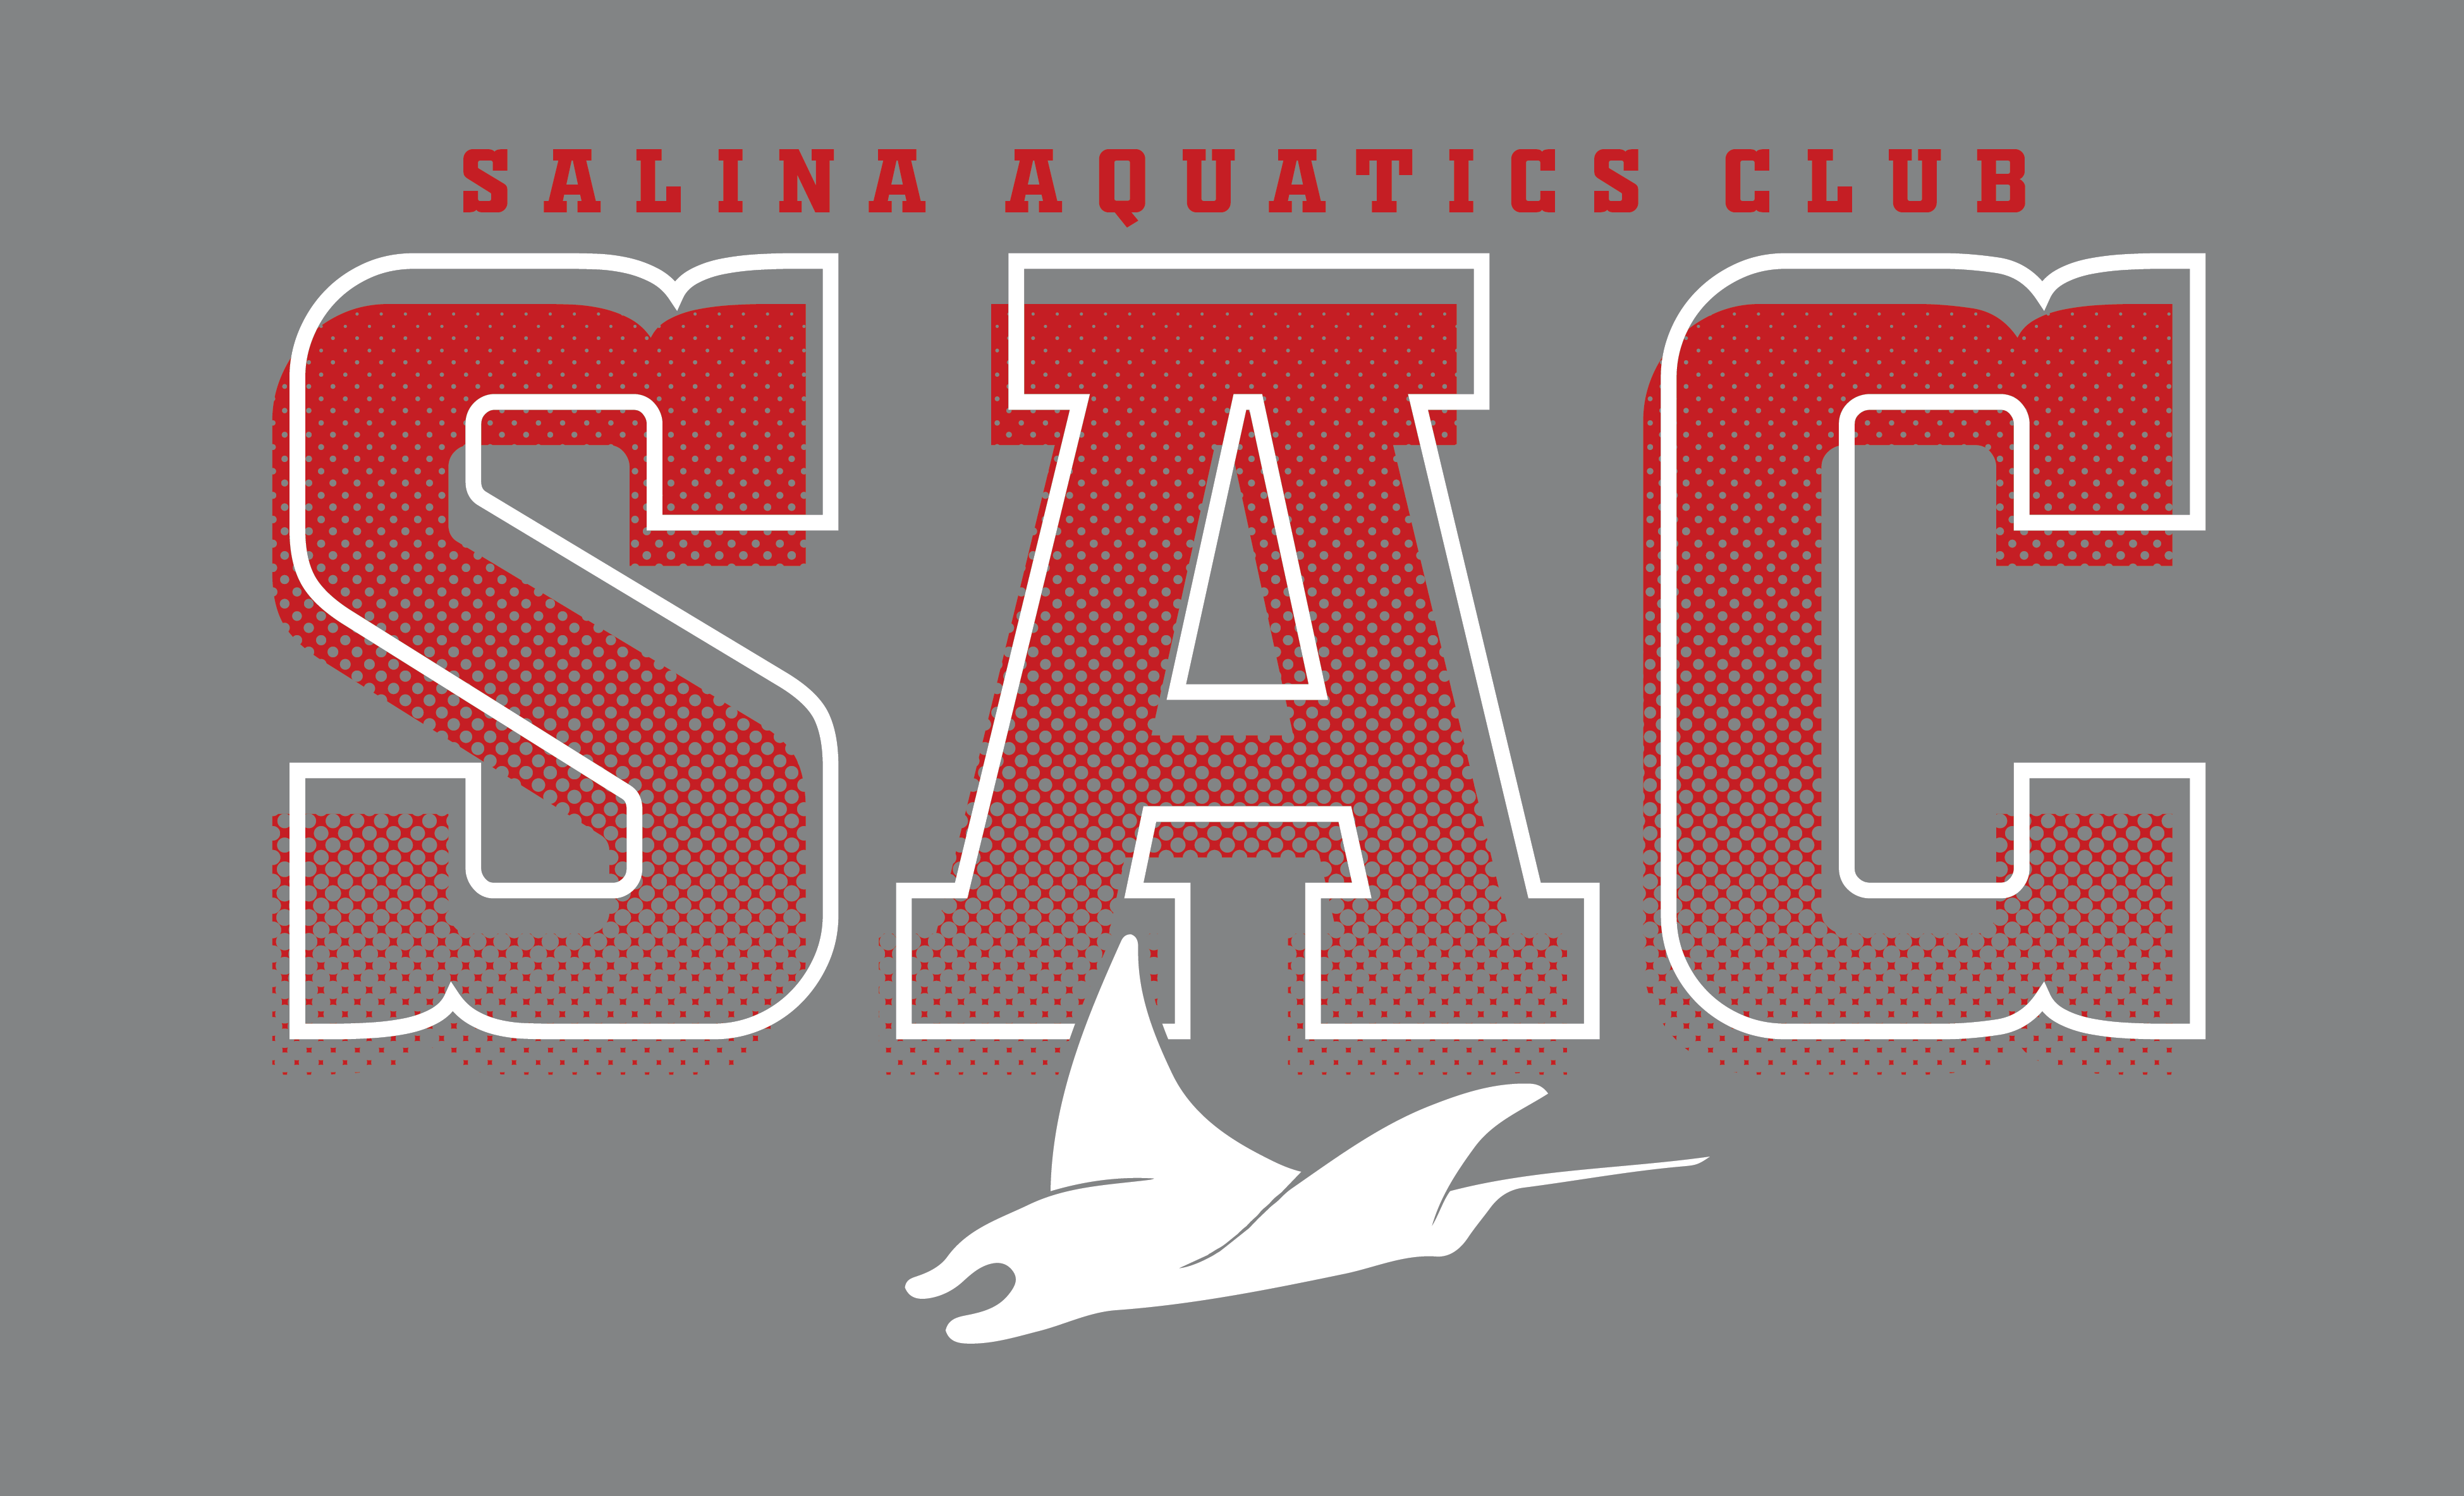 Salina Aquatics Club (9629)